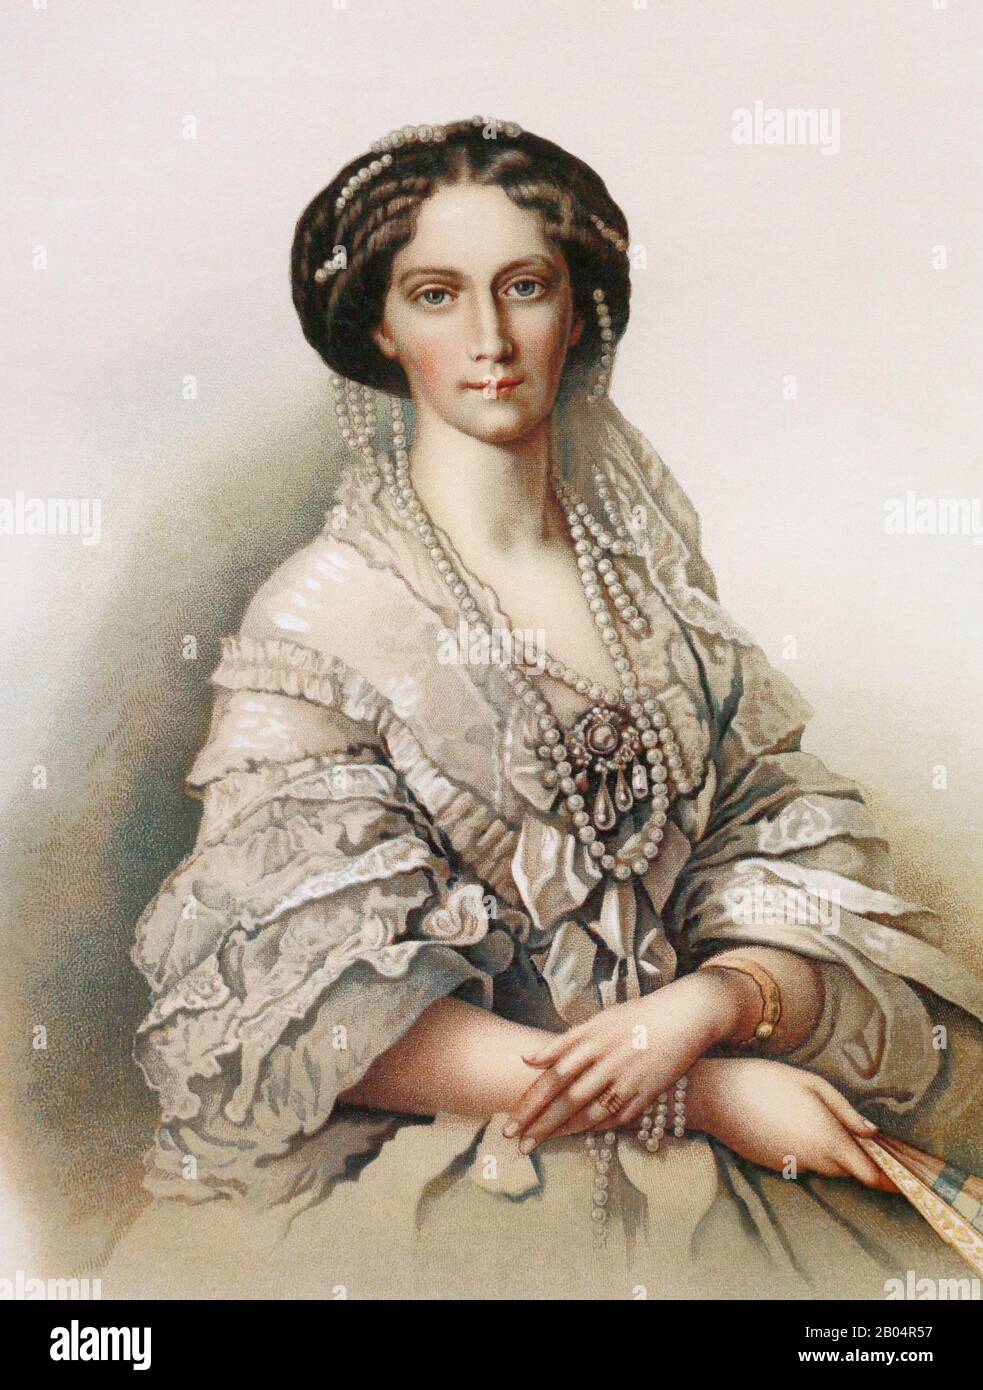 La Emperatriz Rusa María Alexandrovna. Pintura del siglo 19. Foto de stock